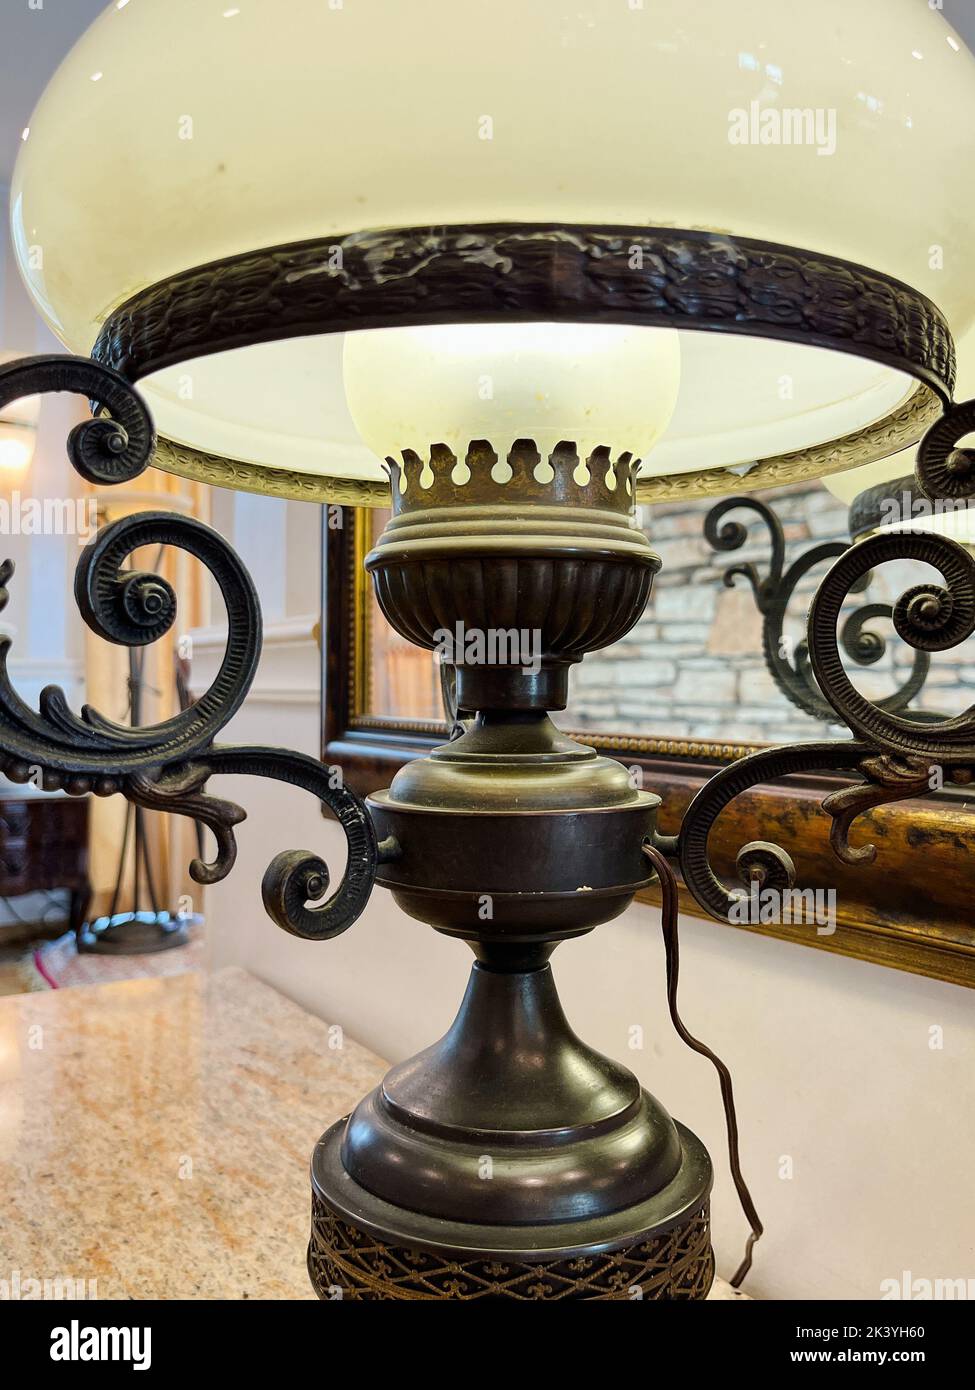 Lampe de table antique sur une table avec un dessus en marbre. Fait à la main. Banque D'Images